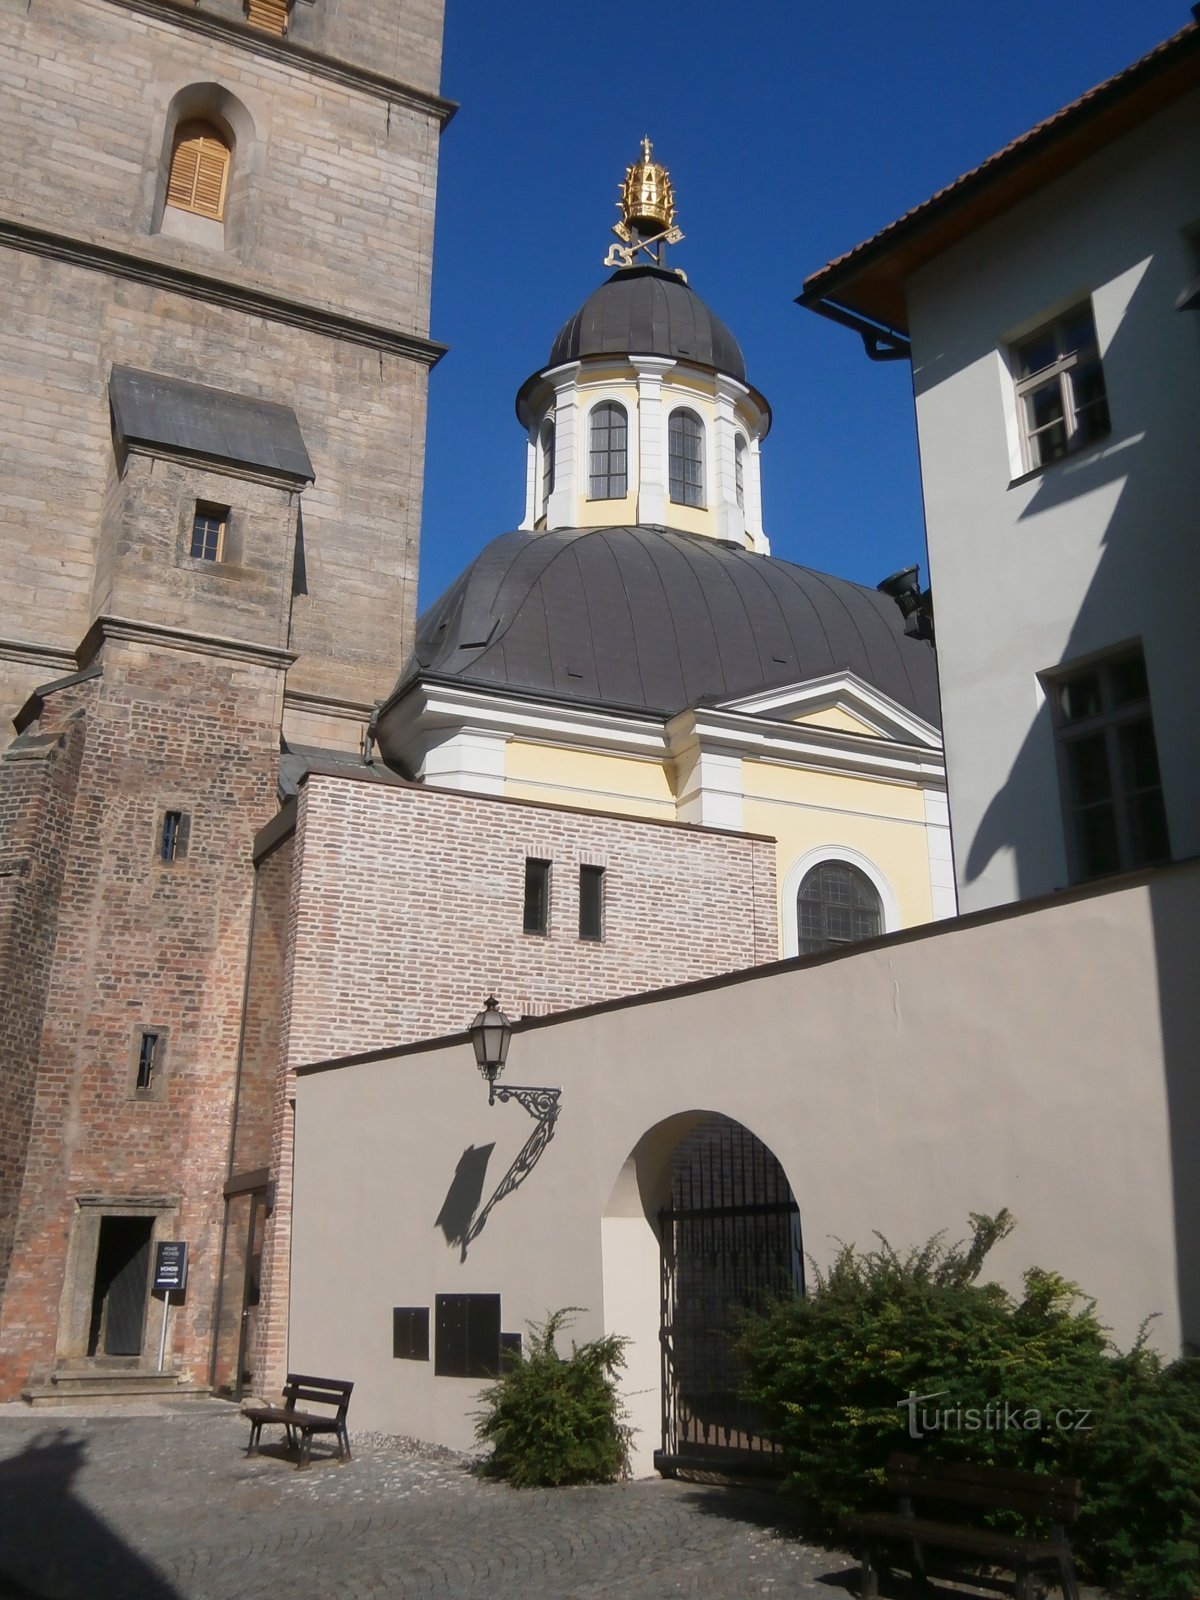 Szent Kápolna Klimenta (Hradec Králové)